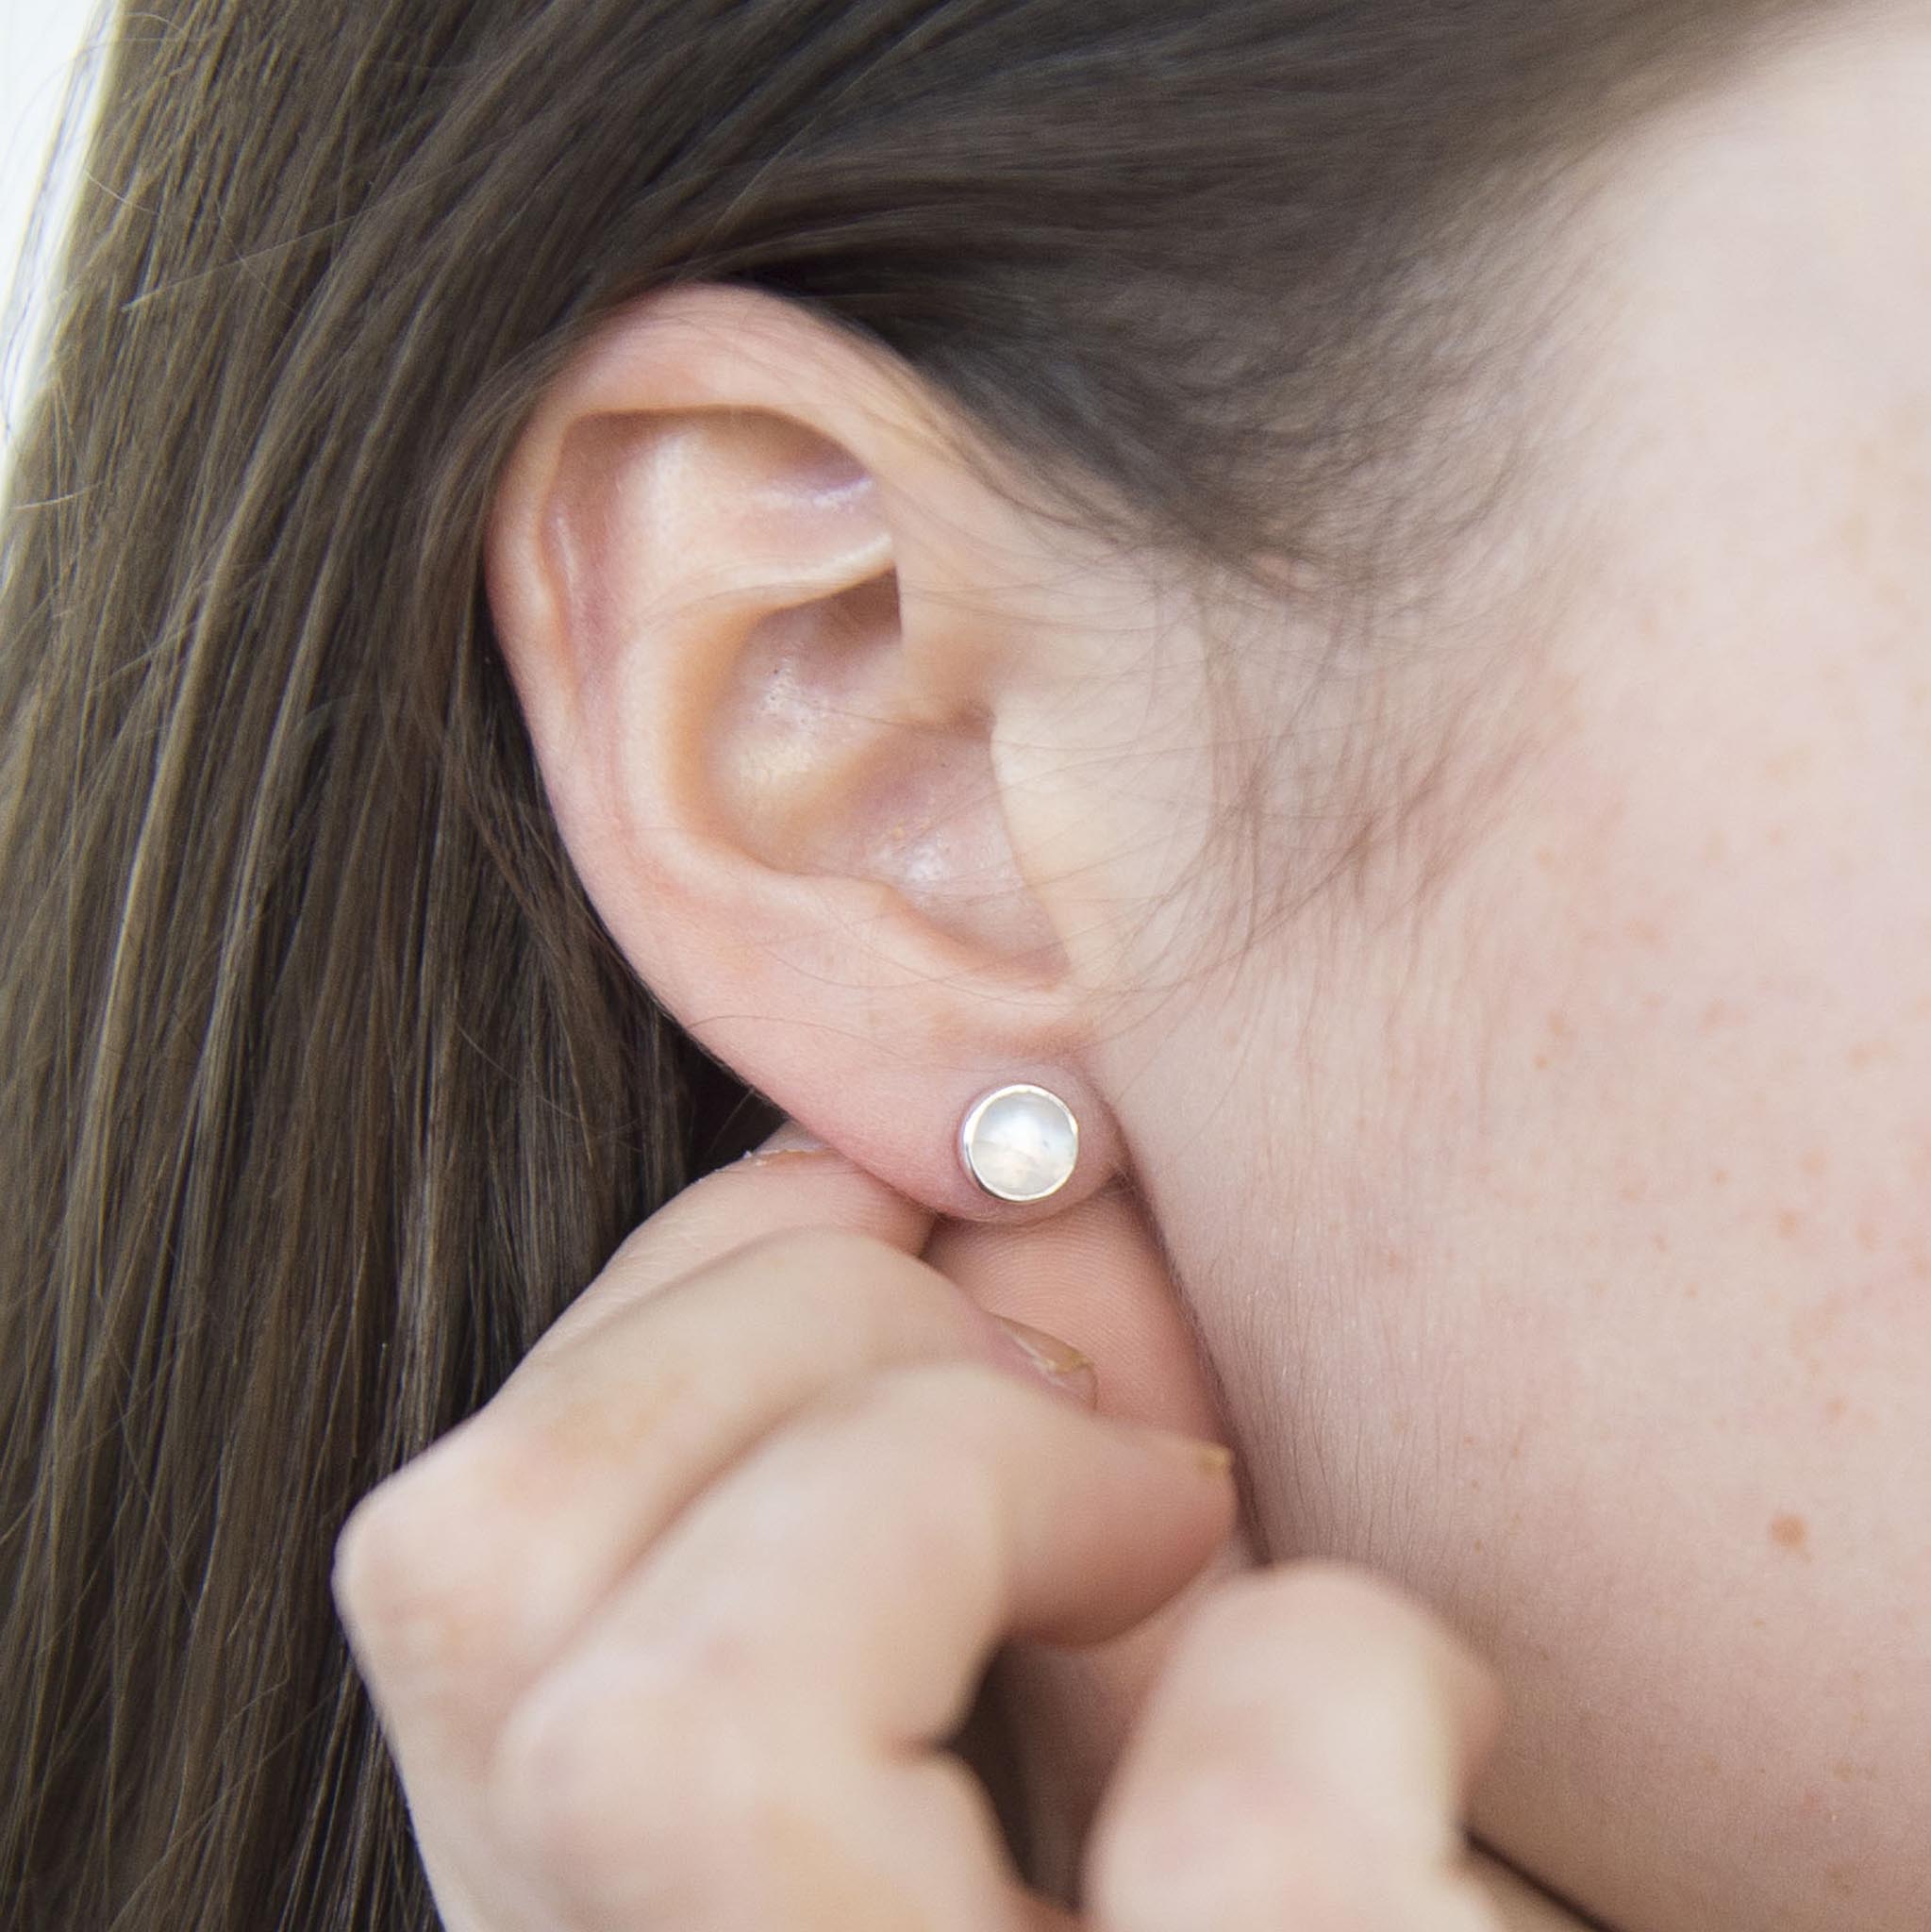 Moonbeam Moonstone Diamond Studs I Moonstone Stud Earrings I NIXIN